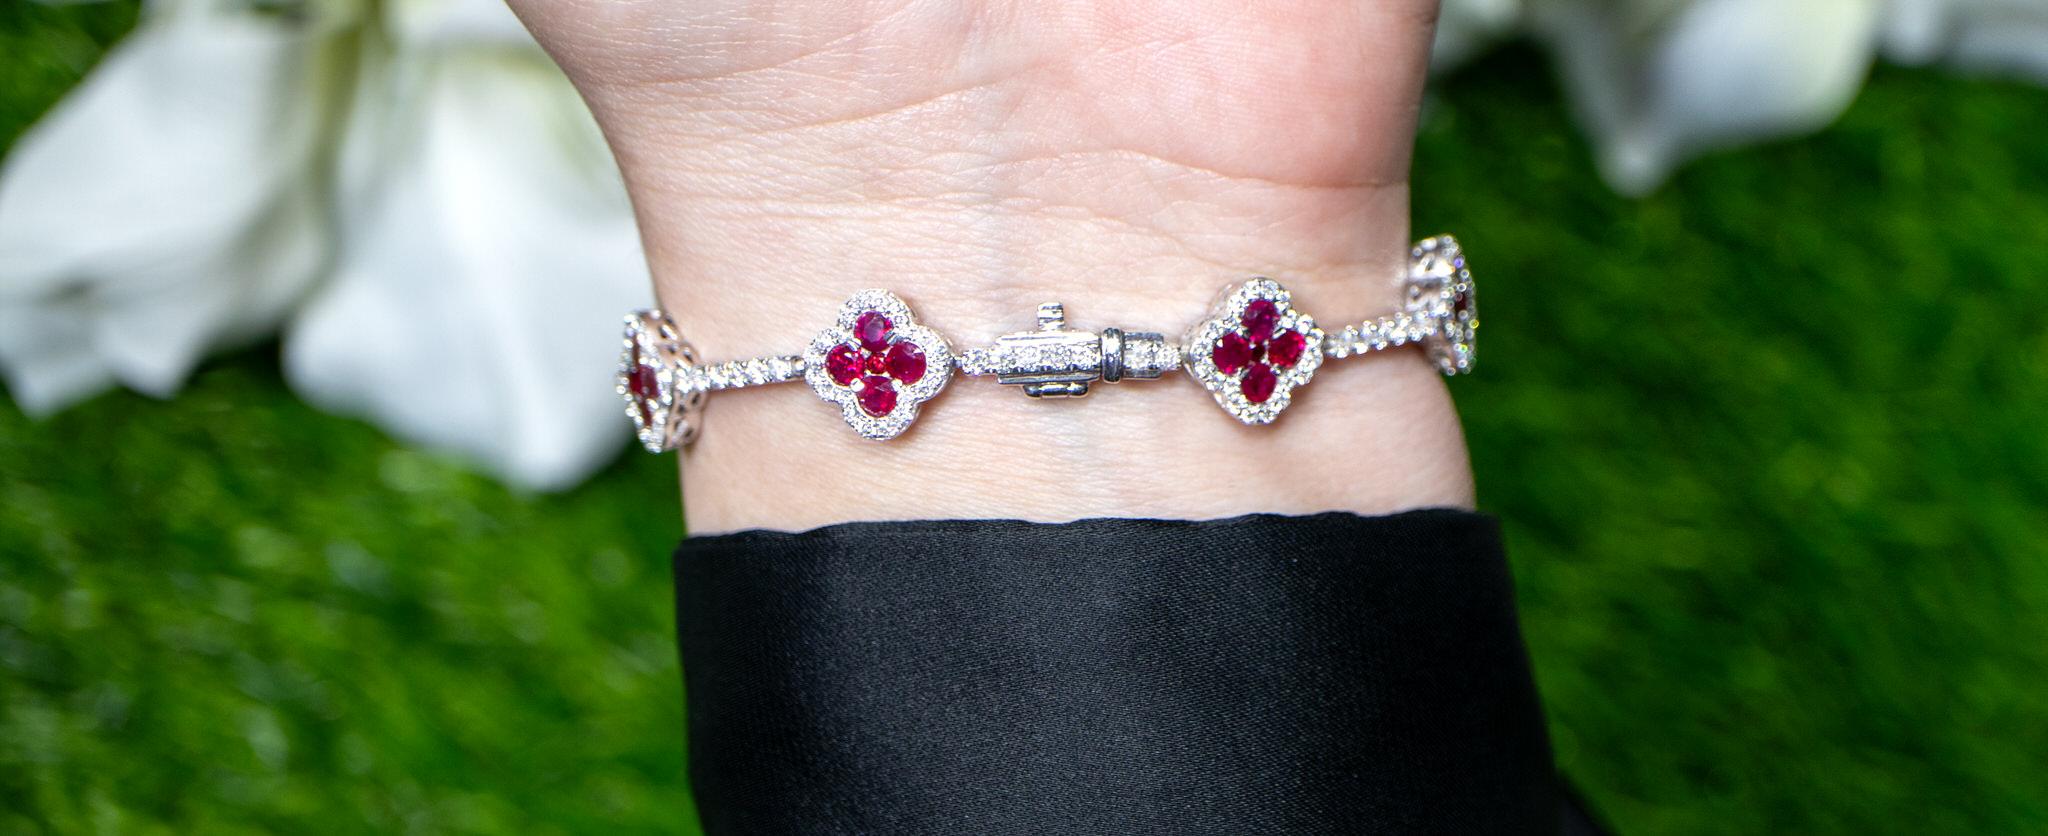 Women's or Men's Clover Ruby Bracelet Diamond Links 6.47 Carats 18K White Gold For Sale